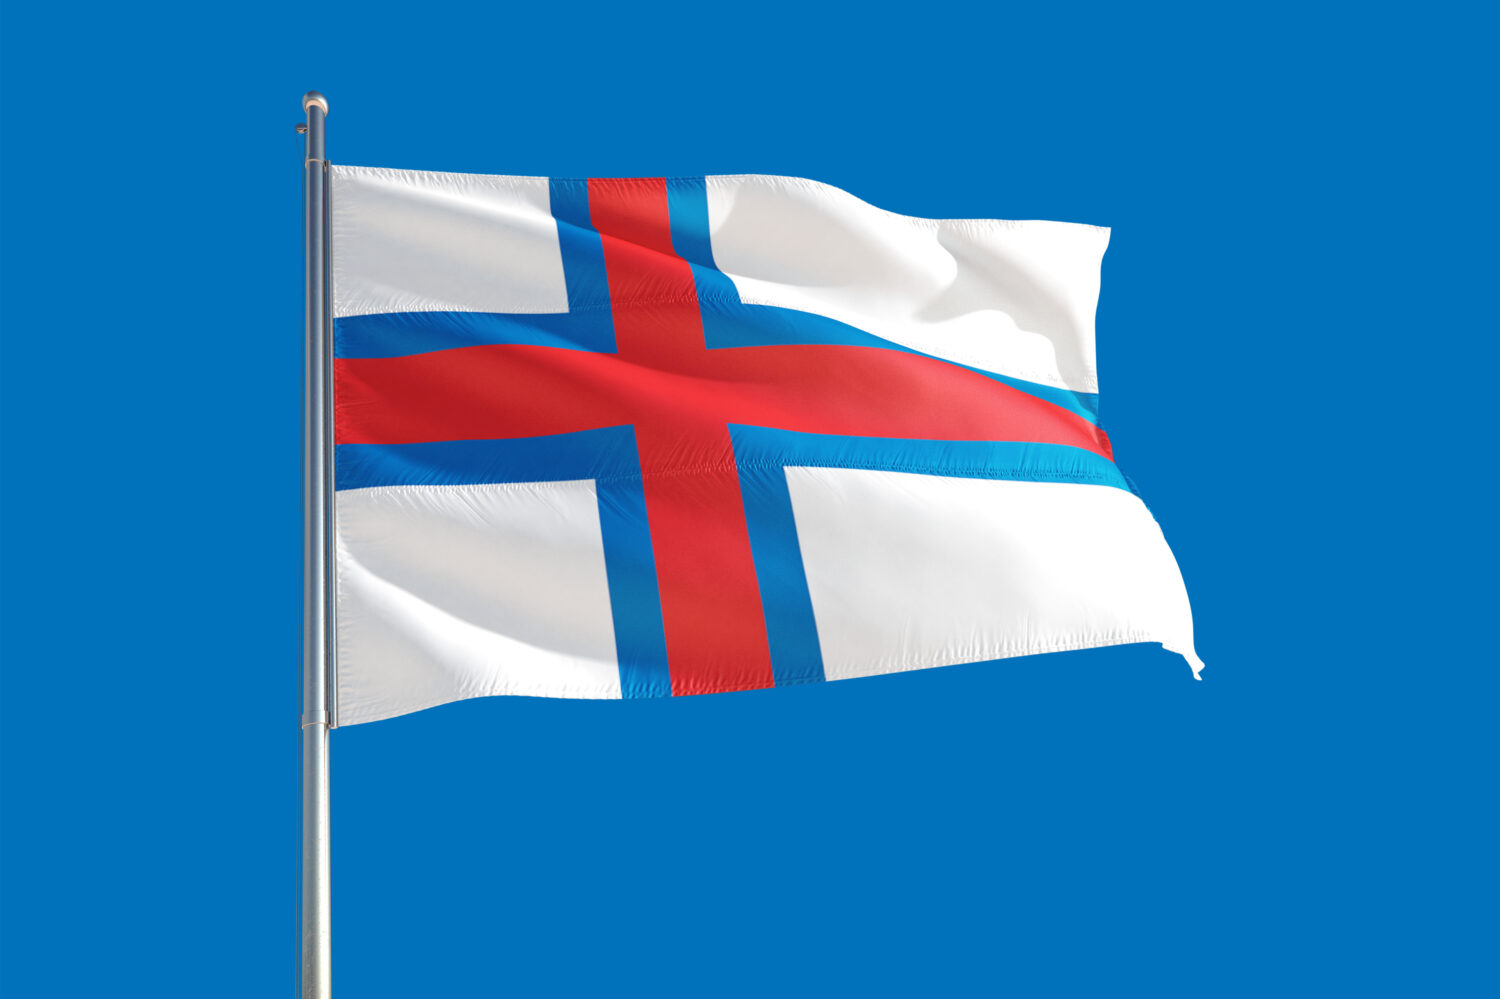 Bandiera nazionale delle Isole Faroe che sventola nel vento su un cielo blu profondo.  Tessuto di alta qualità.  Concetto di relazioni internazionali.